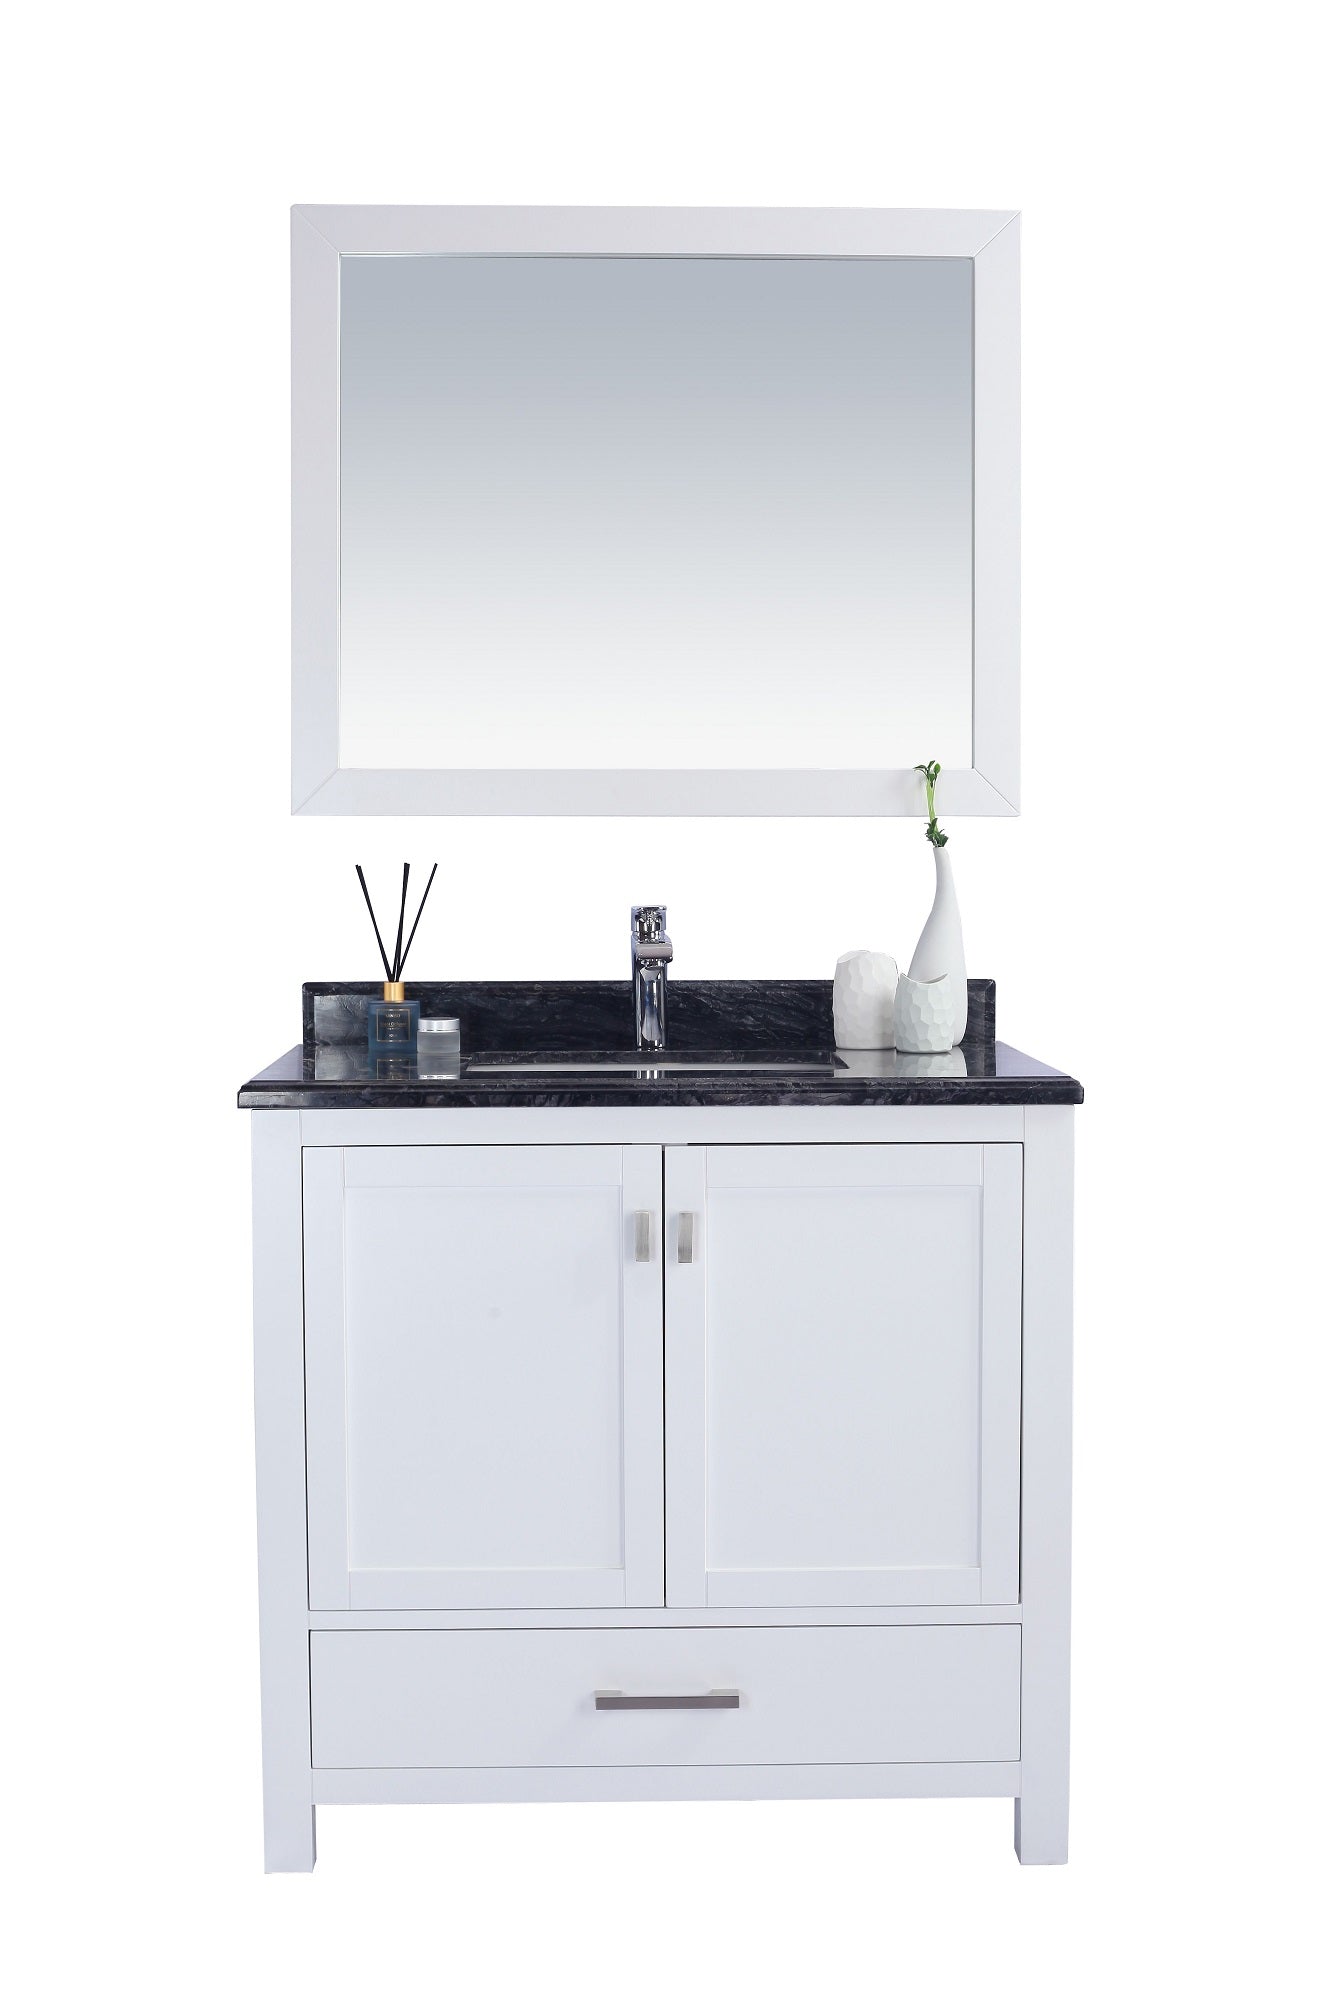 Wilson 36 - Cabinet with Countertop - Luxe Bathroom Vanities Luxury Bathroom Fixtures Bathroom Furniture